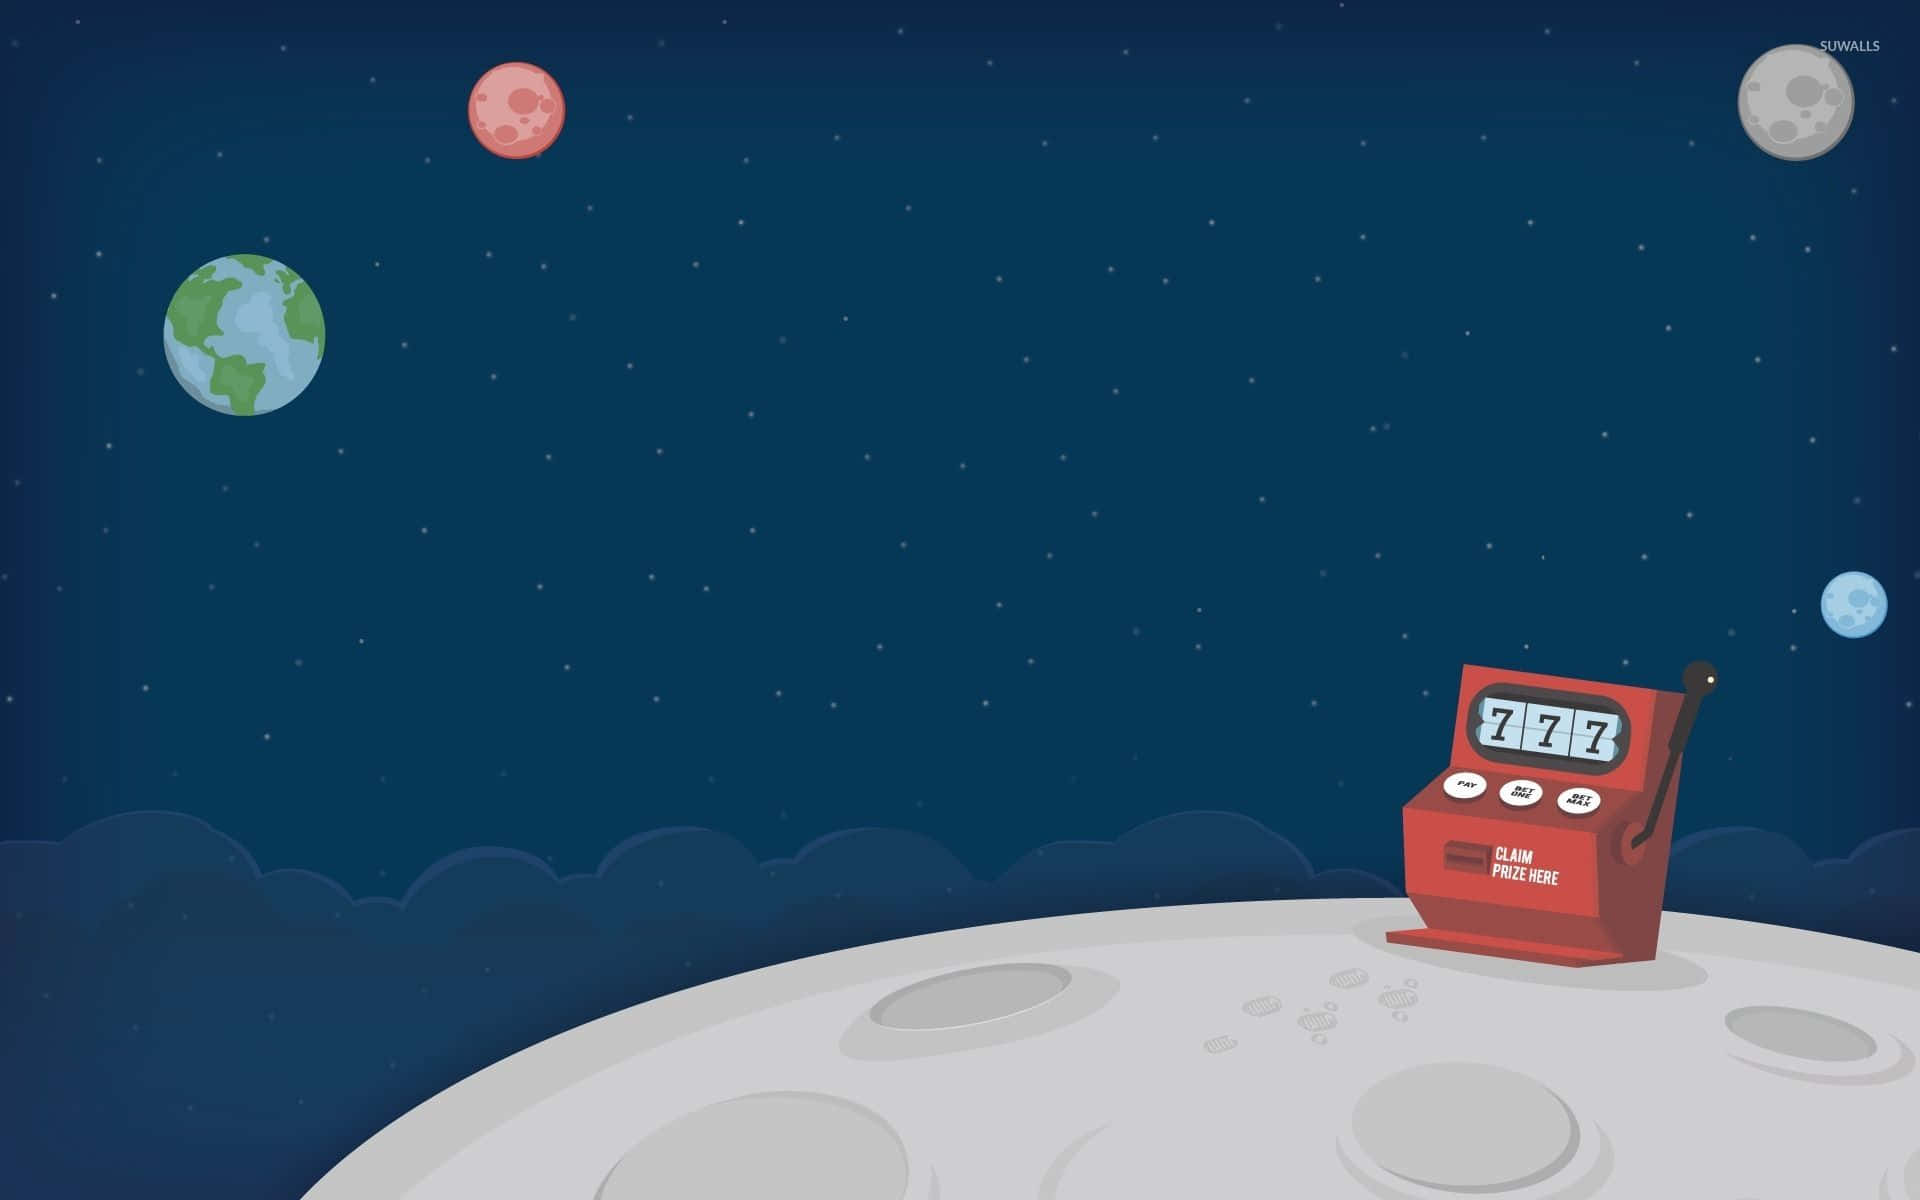 Unteléfono Rojo En La Luna Con Planetas En El Fondo.